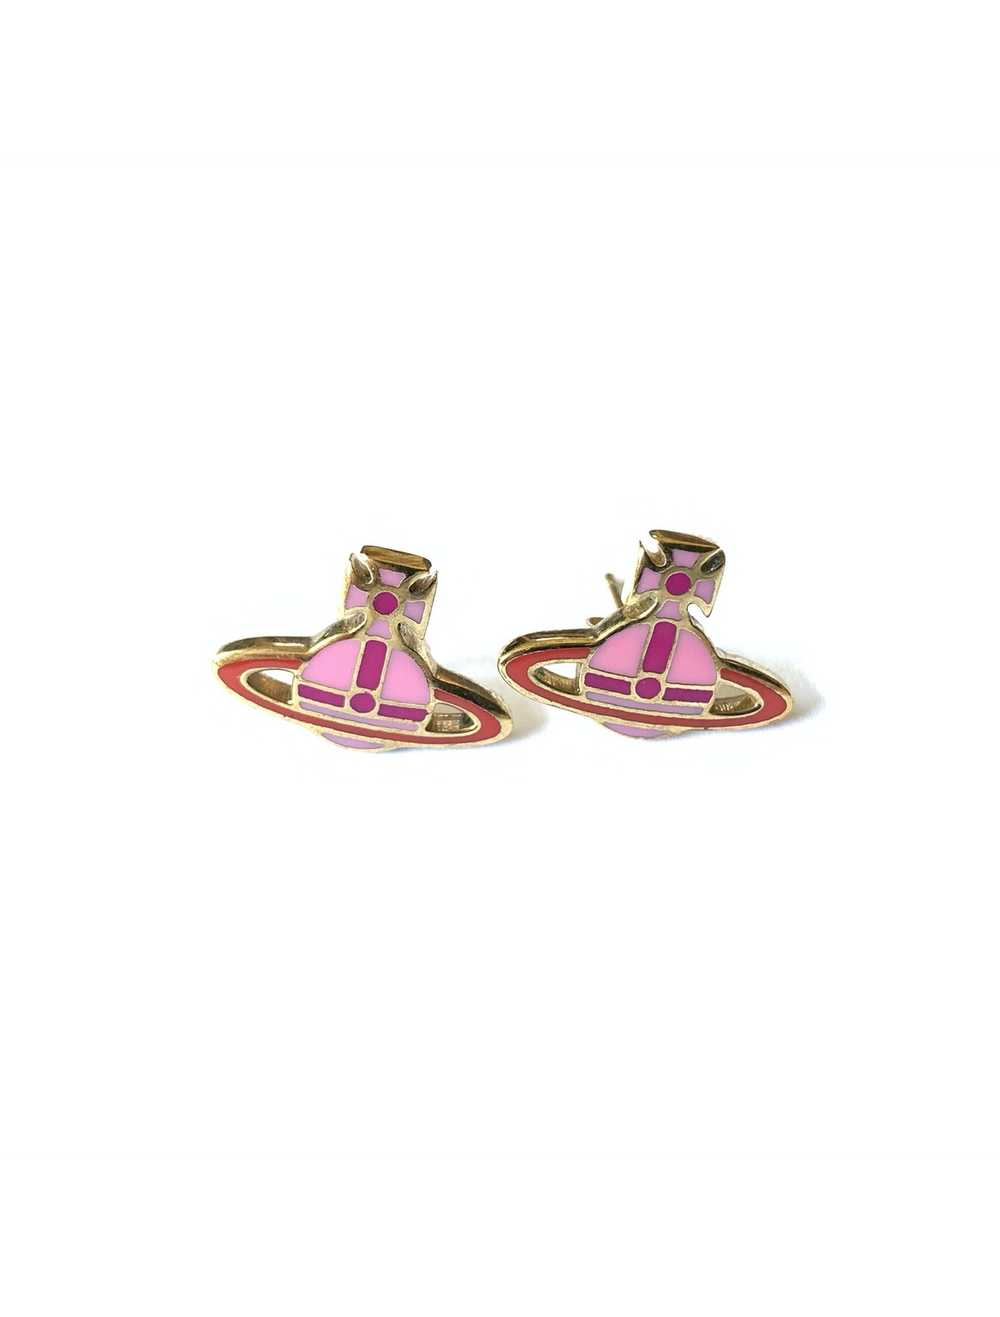 Vivienne Westwood Pink Enamel Earrings - image 2